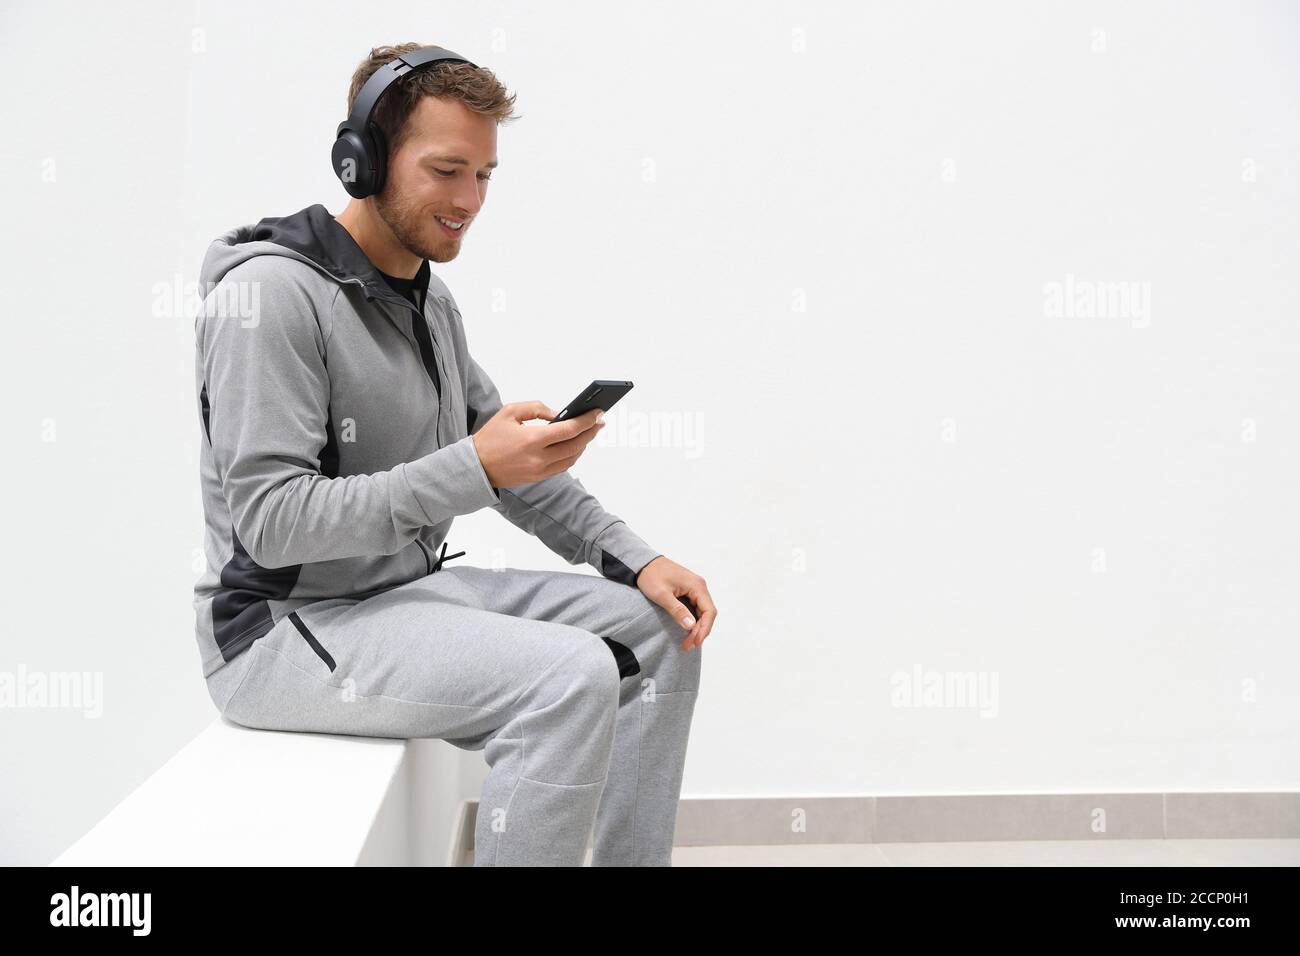 Mann hört Musik Handy-App trägt Kopfhörer sitzen zu Hause. Gesunder Lifestyle-Sportler mit Smartphone auf Jogging-Pause im Freien Stockfoto